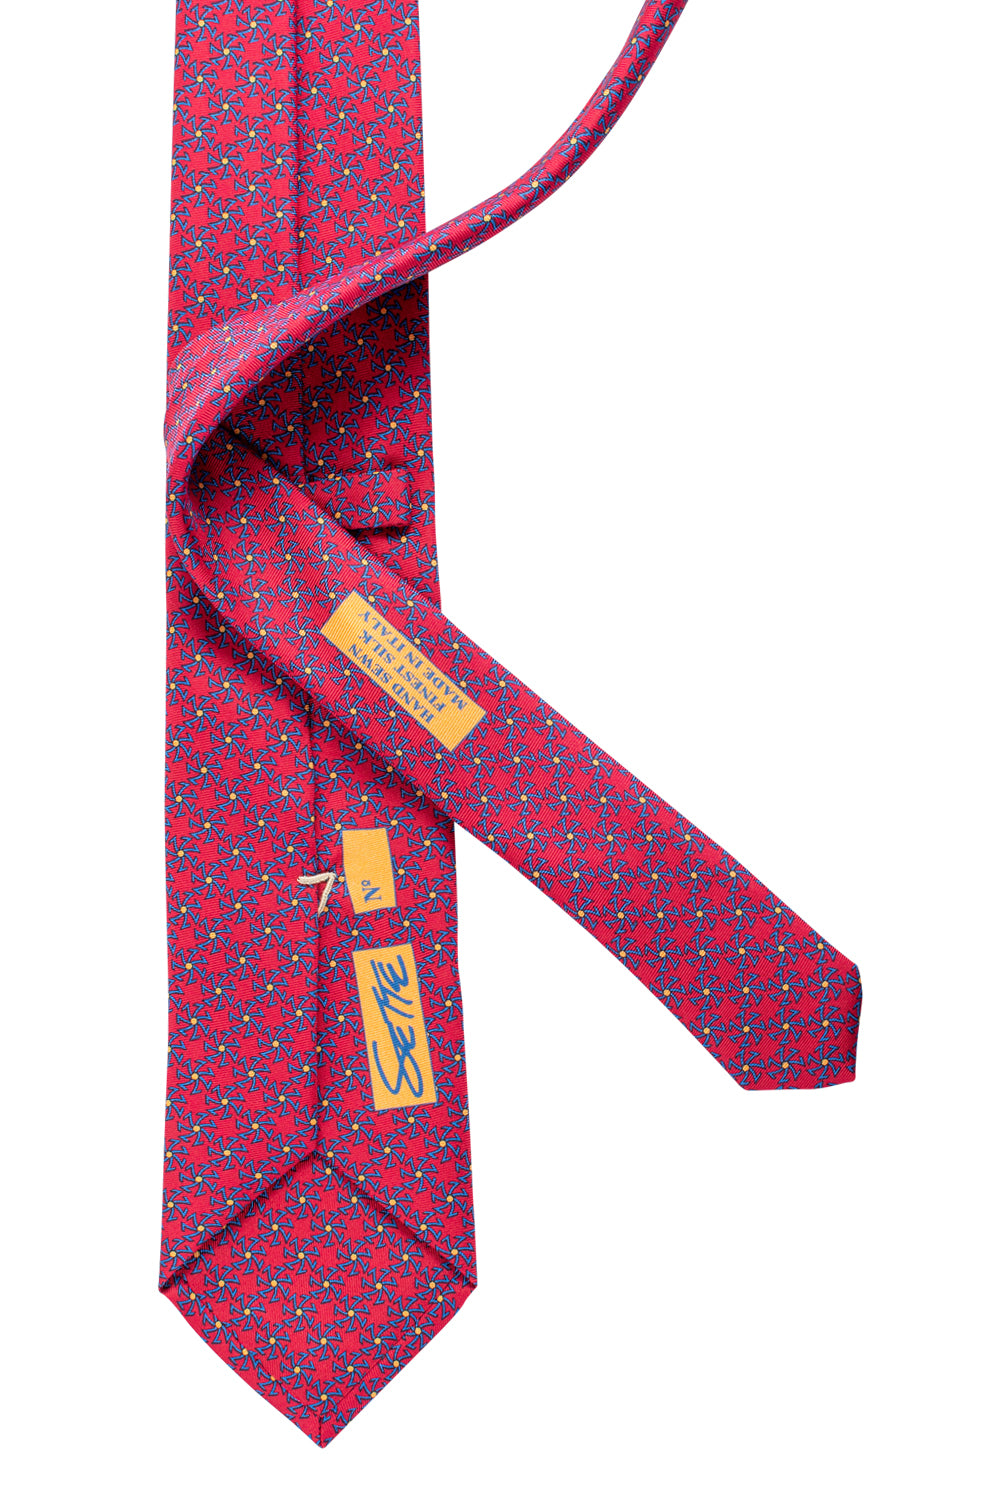 Rebel Premium Silk Neckties - Sette Star Printed - AAA Italian Silk